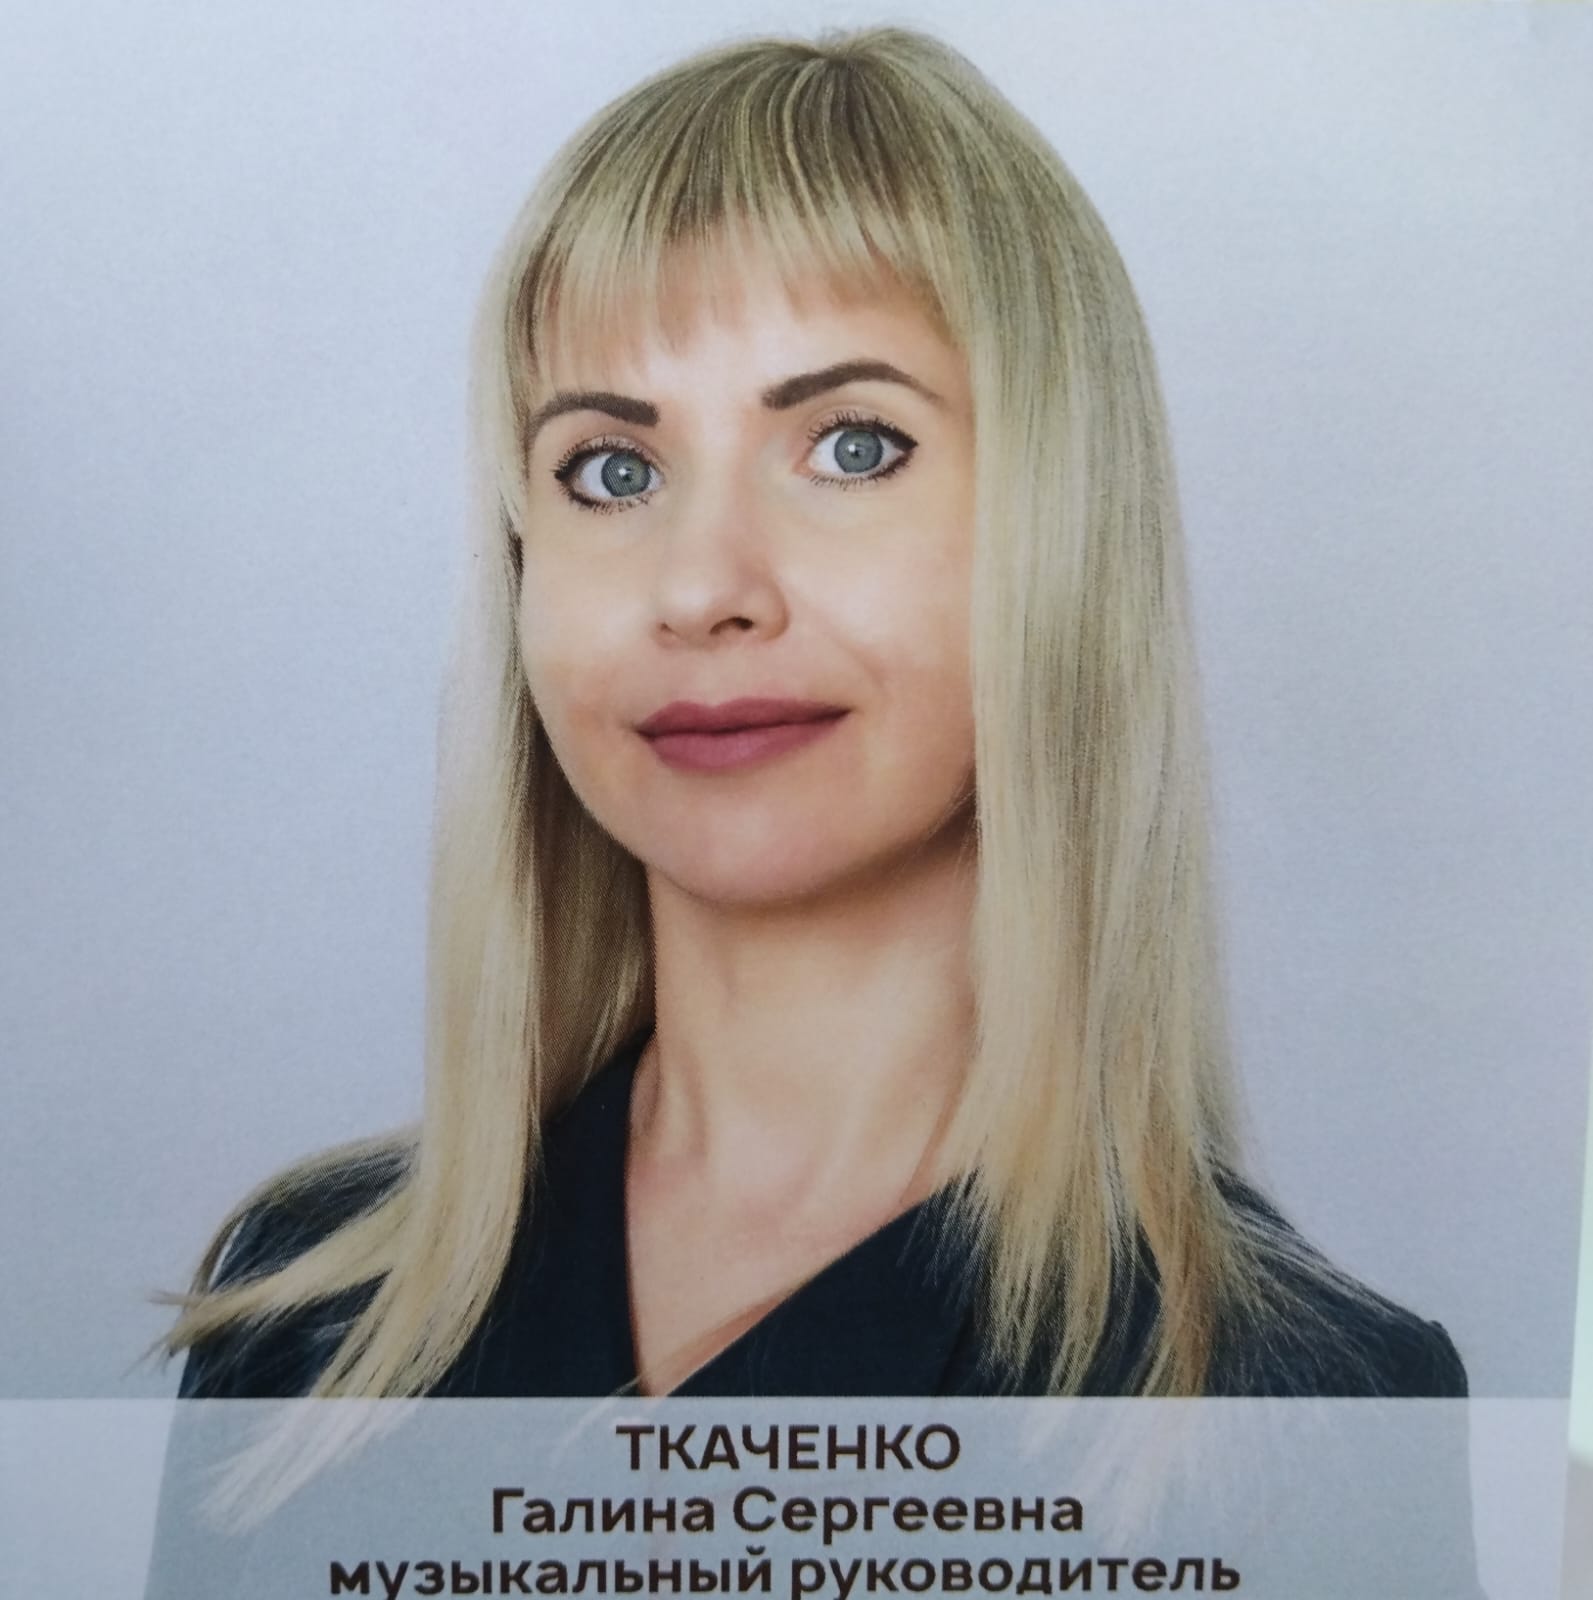 Педагогический работник Ткаченко Галина Сергеевна.